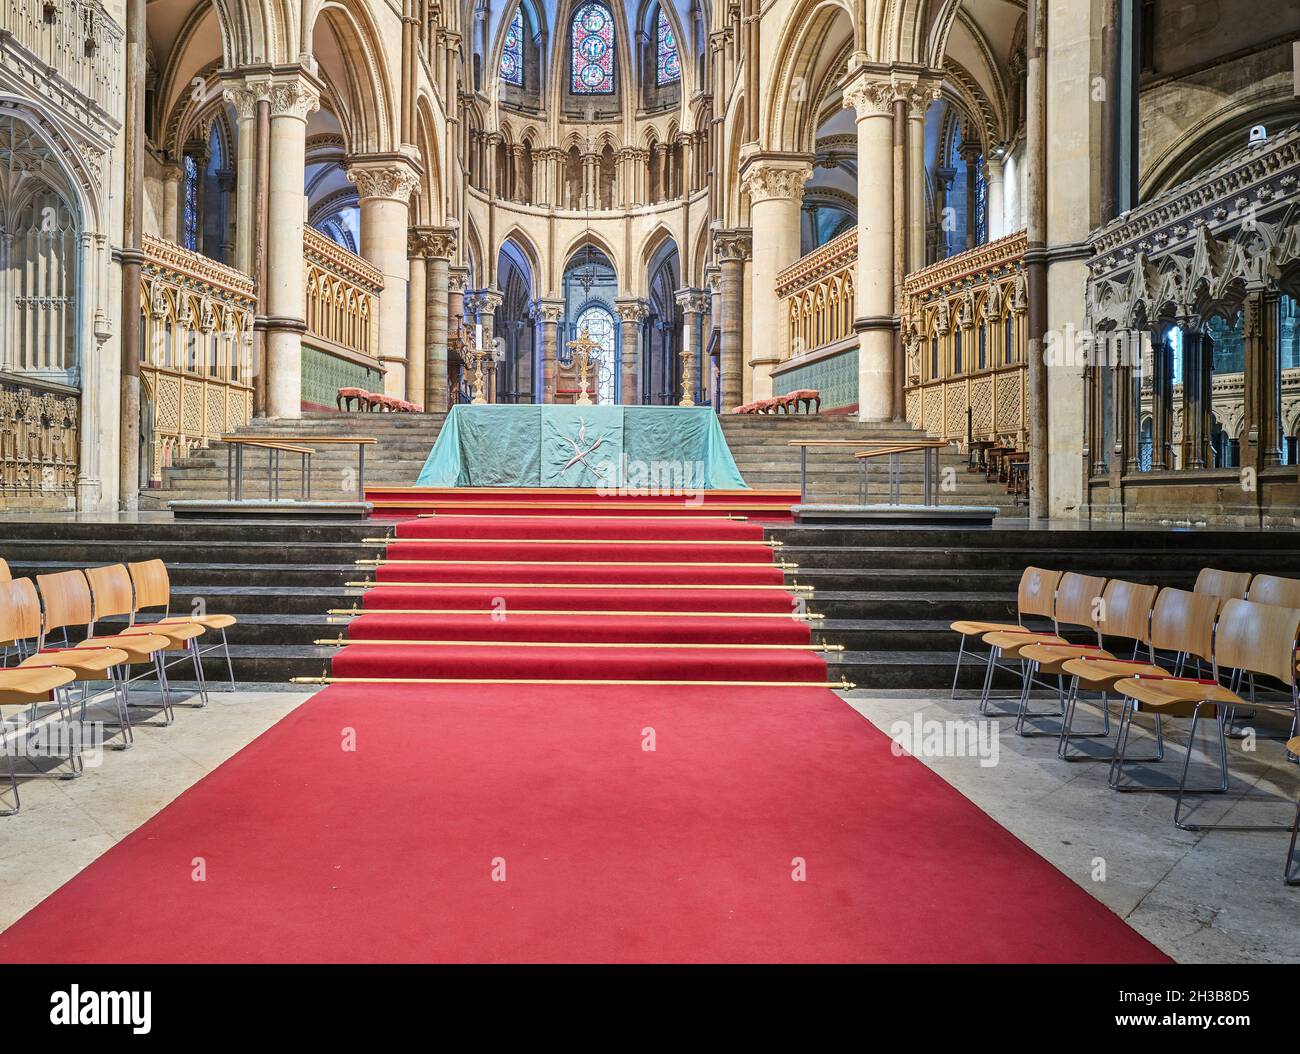 Tapis rouge dans la chorale de la cathédrale de Canterbury, Angleterre, octobre 2021. Banque D'Images